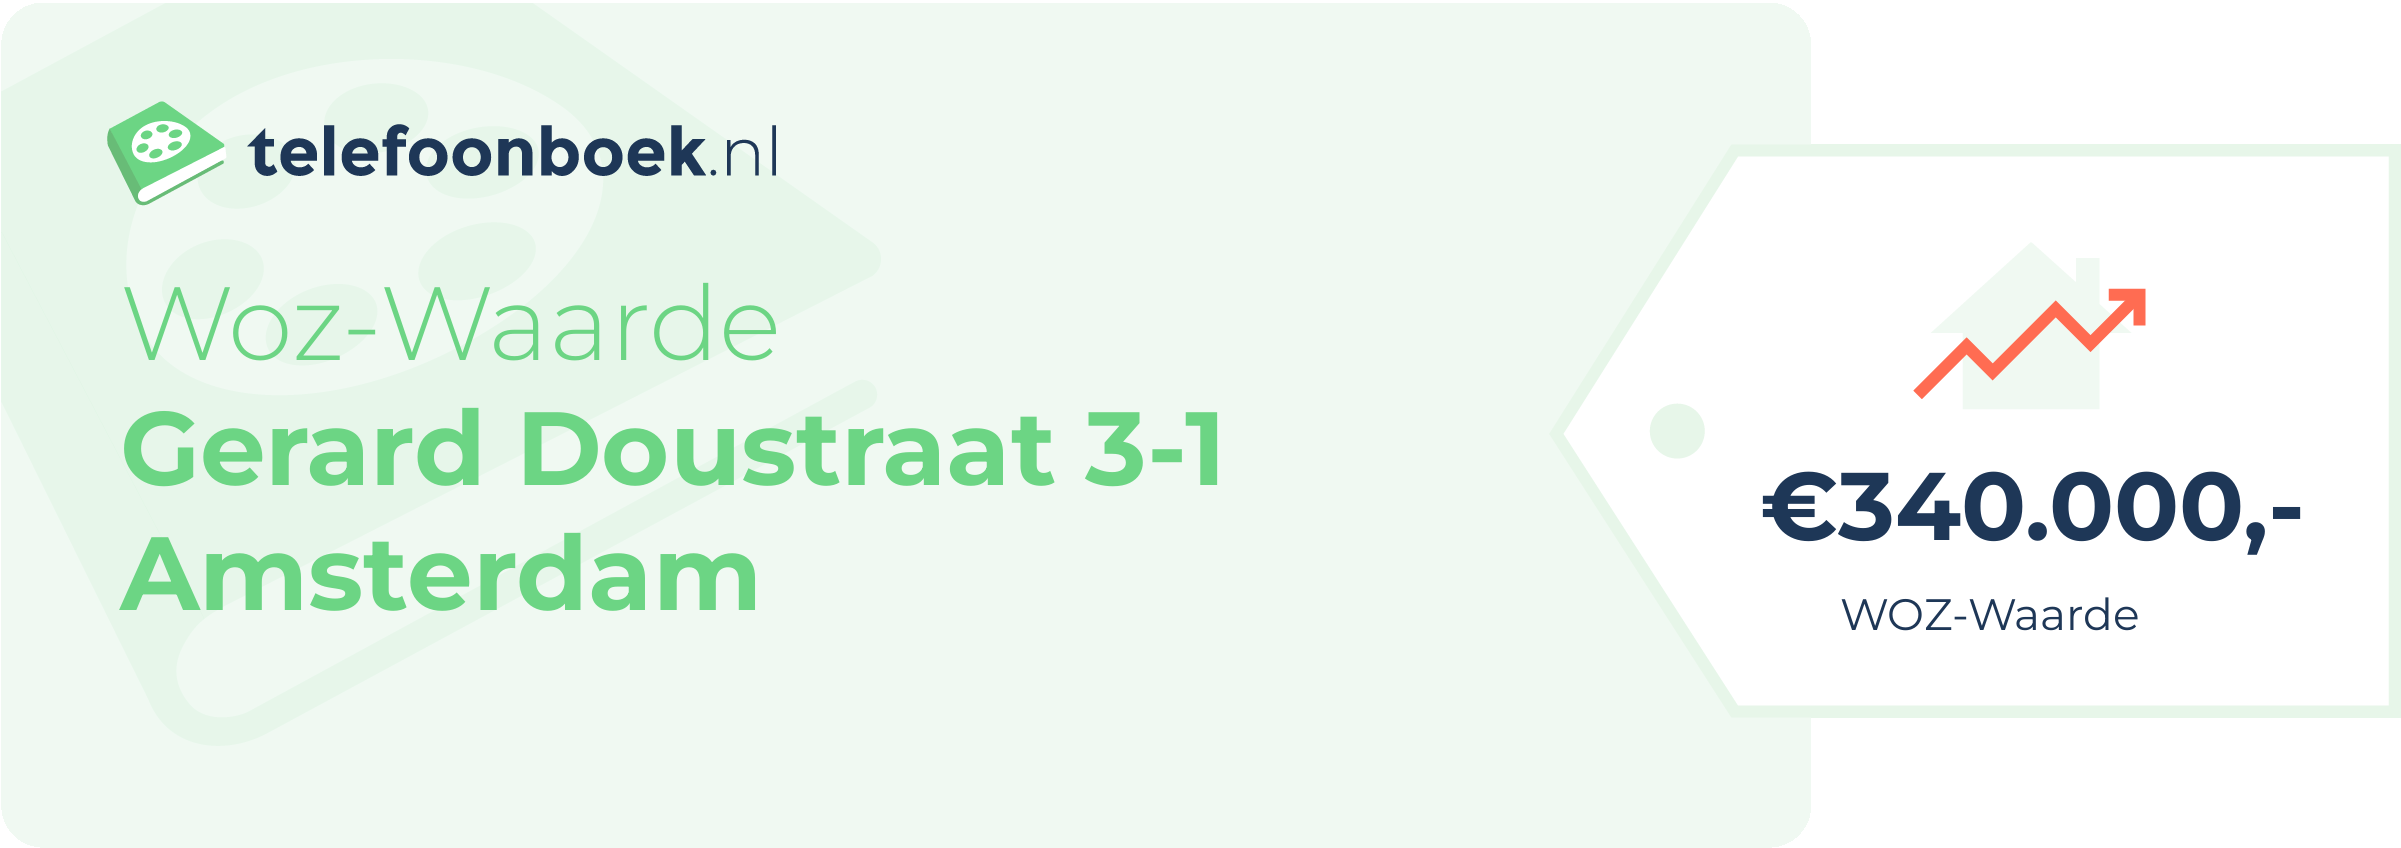 WOZ-waarde Gerard Doustraat 3-1 Amsterdam